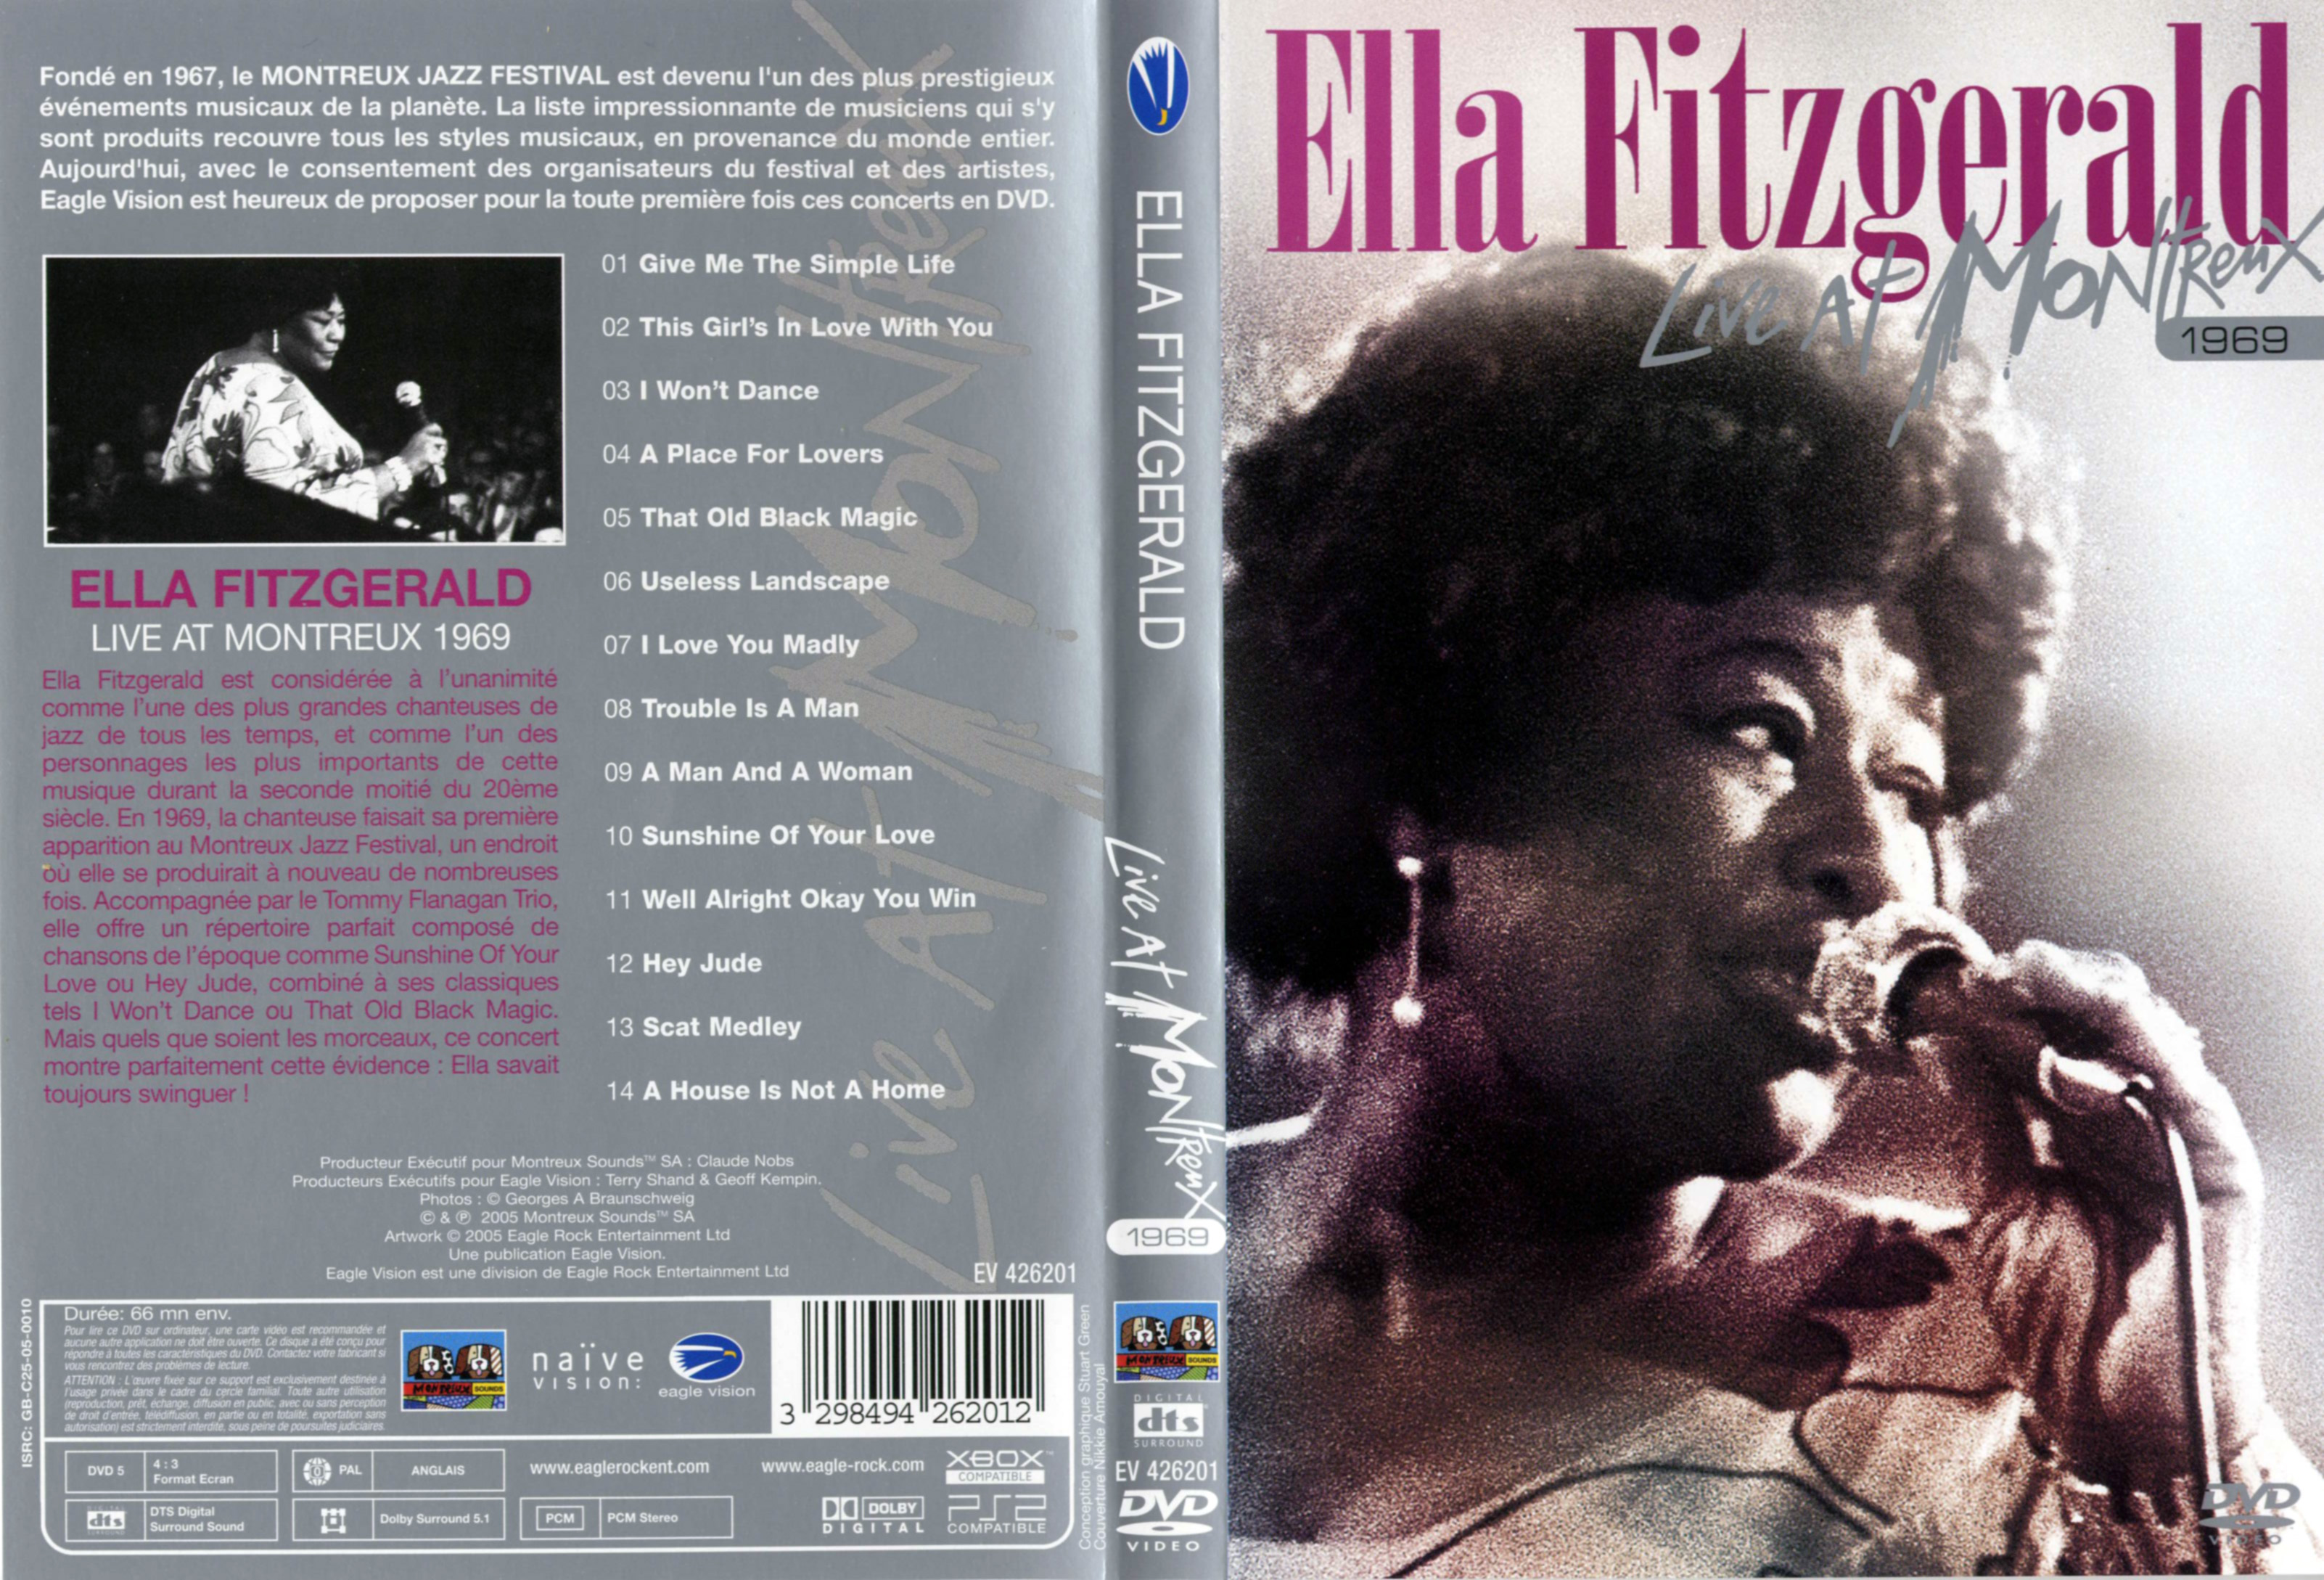 Jaquette DVD Ella Fitzgerald Live at Montreux 1969